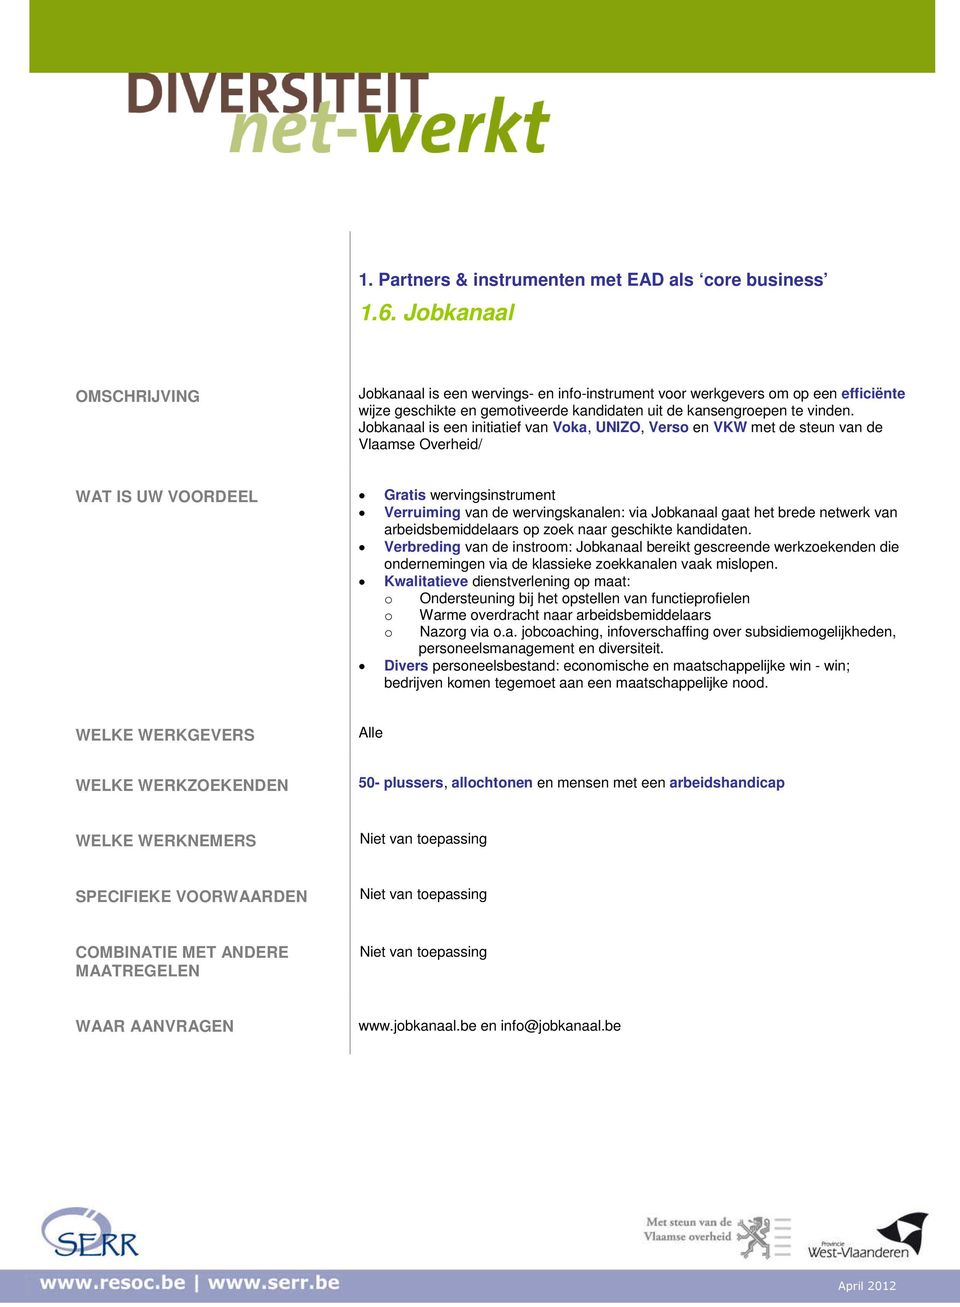 Jobkanaal is een initiatief van Voka, UNIZO, Verso en VKW met de steun van de Vlaamse Overheid/ WAT IS UW VOORDEEL Gratis wervingsinstrument Verruiming van de wervingskanalen: via Jobkanaal gaat het